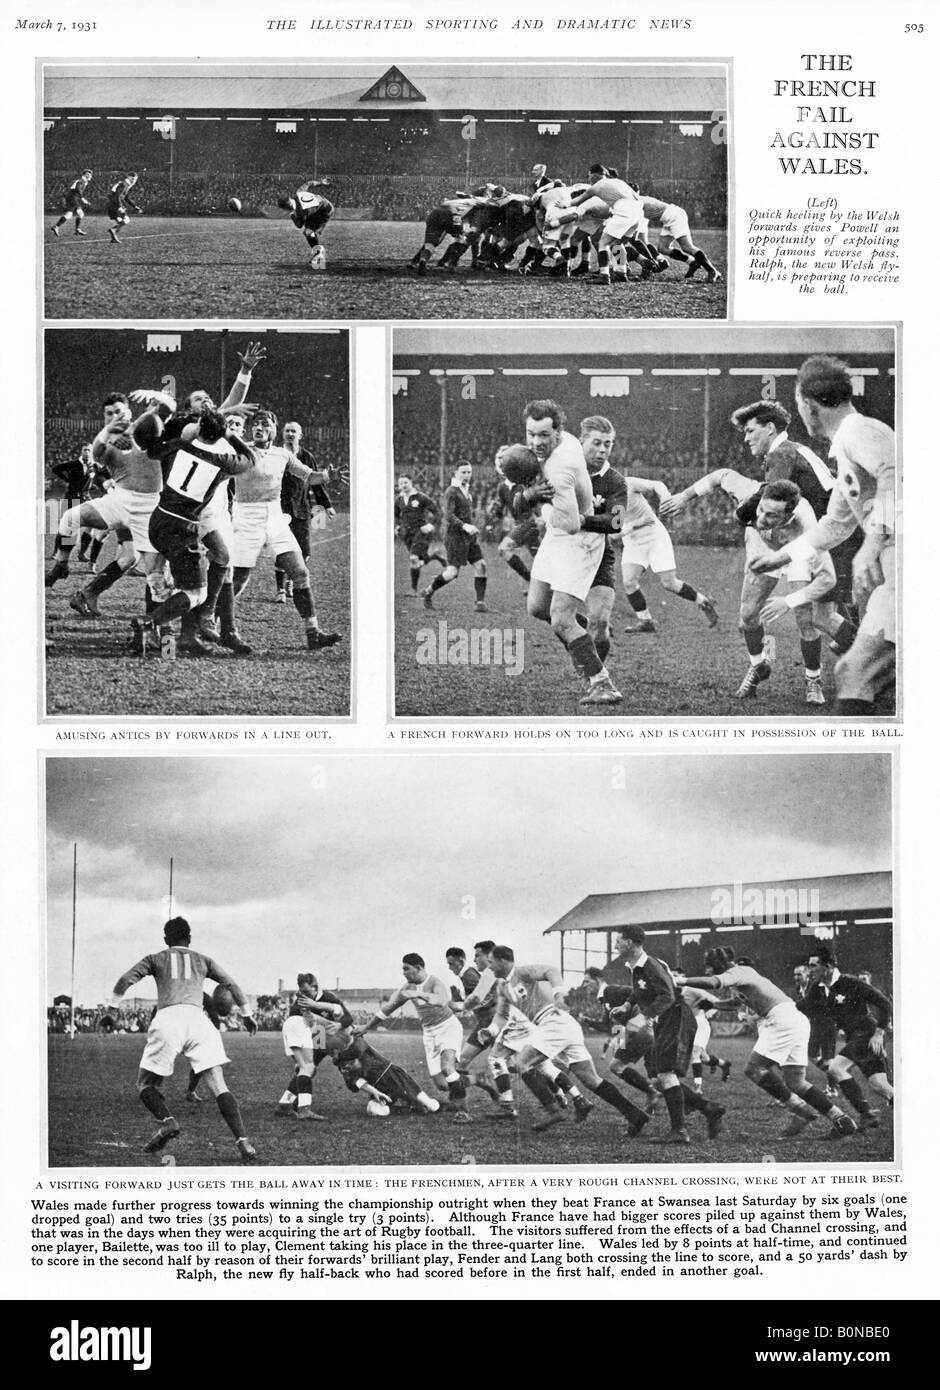 Pays de Galles v France 1931 rugby que le pays de Galles a battu la France 35 à 3 Swansea France handicapé par un mauvais passage de canal Banque D'Images